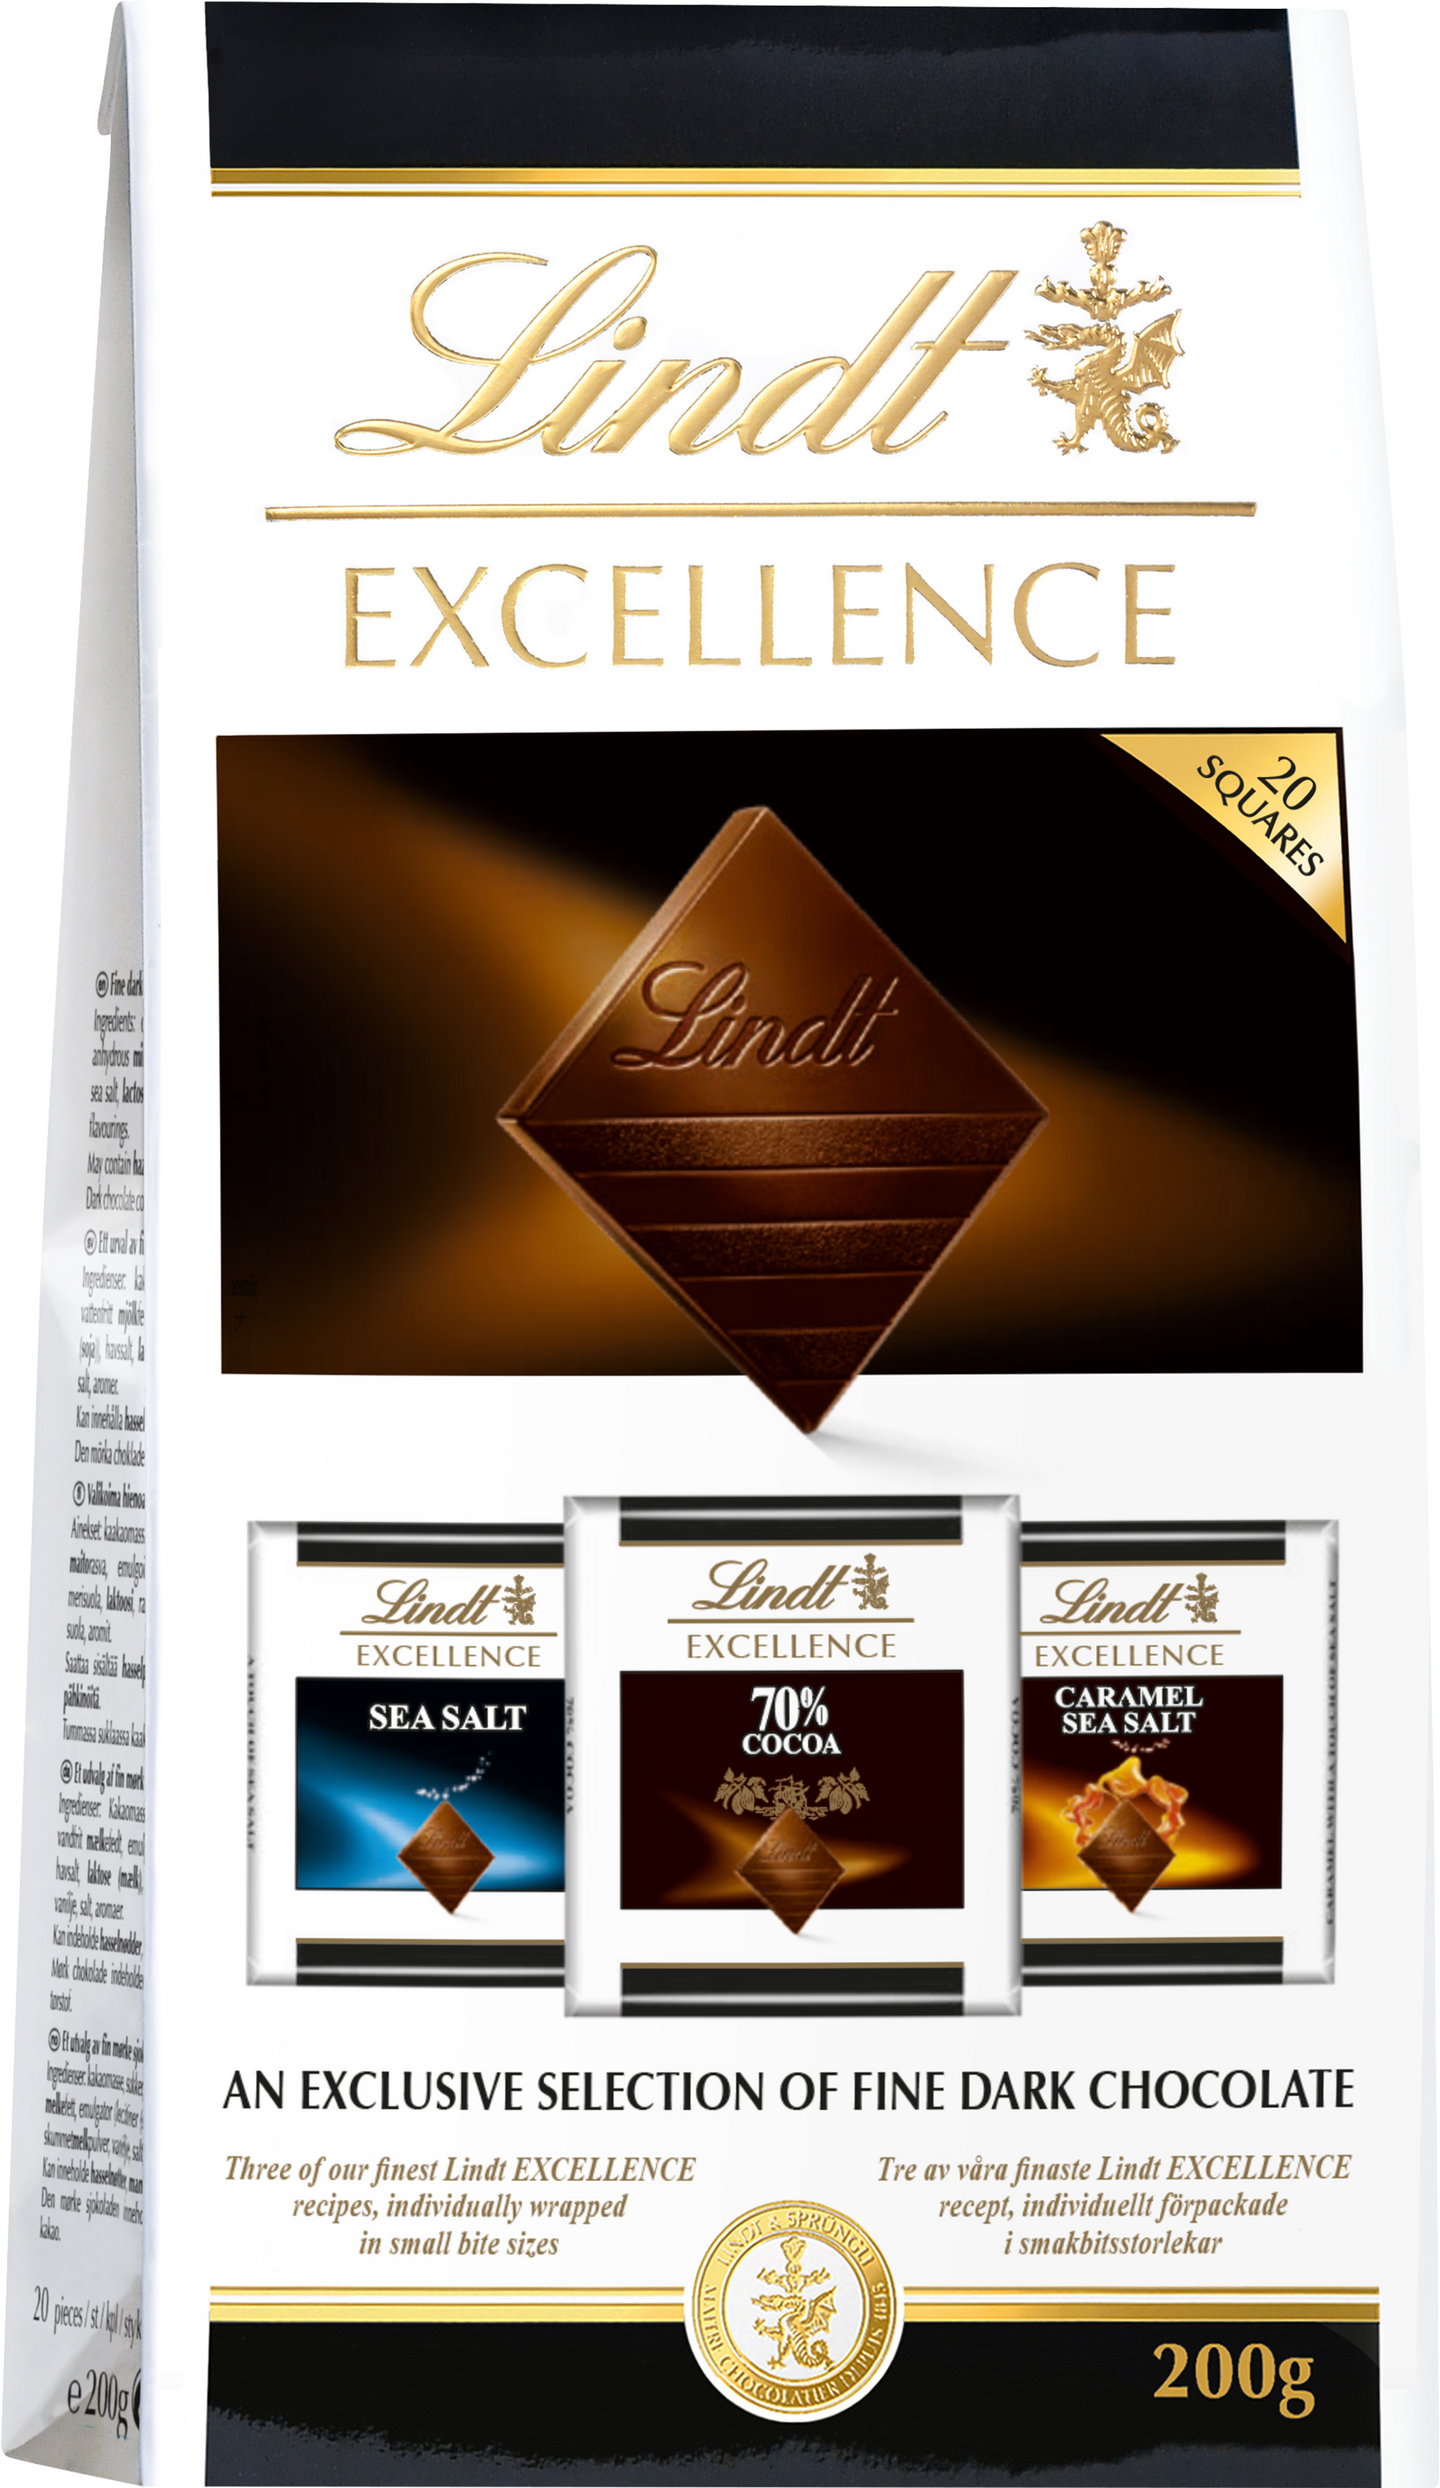 Lindt Excellence tummat suklaapalat 70% 200g